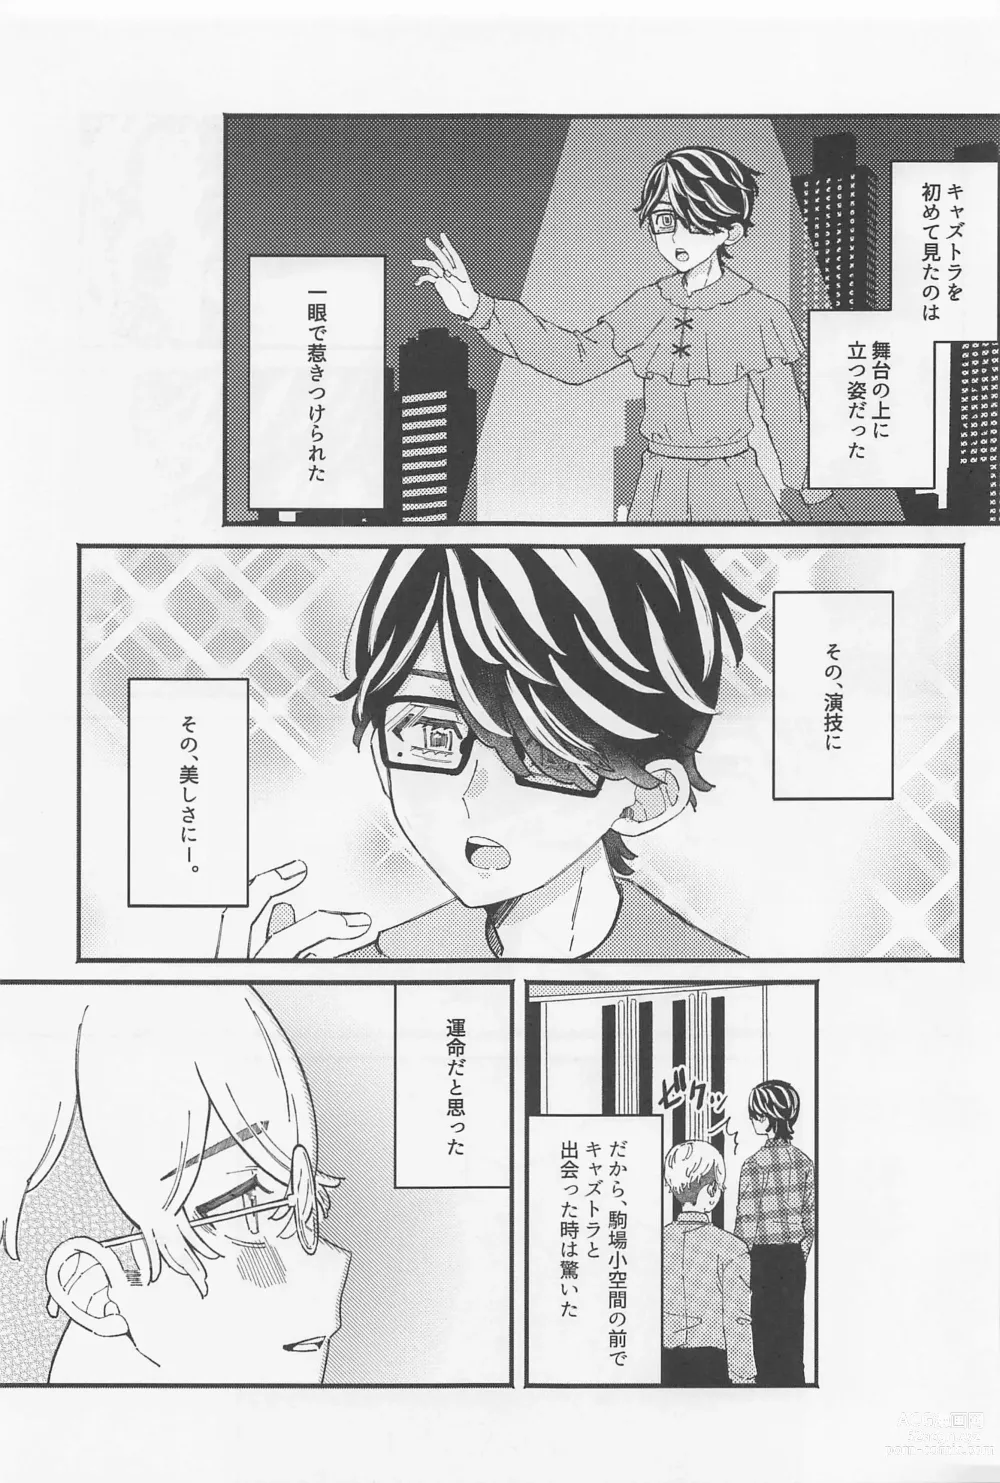 Page 2 of doujinshi Ame ga Futtara Niji ni Naru